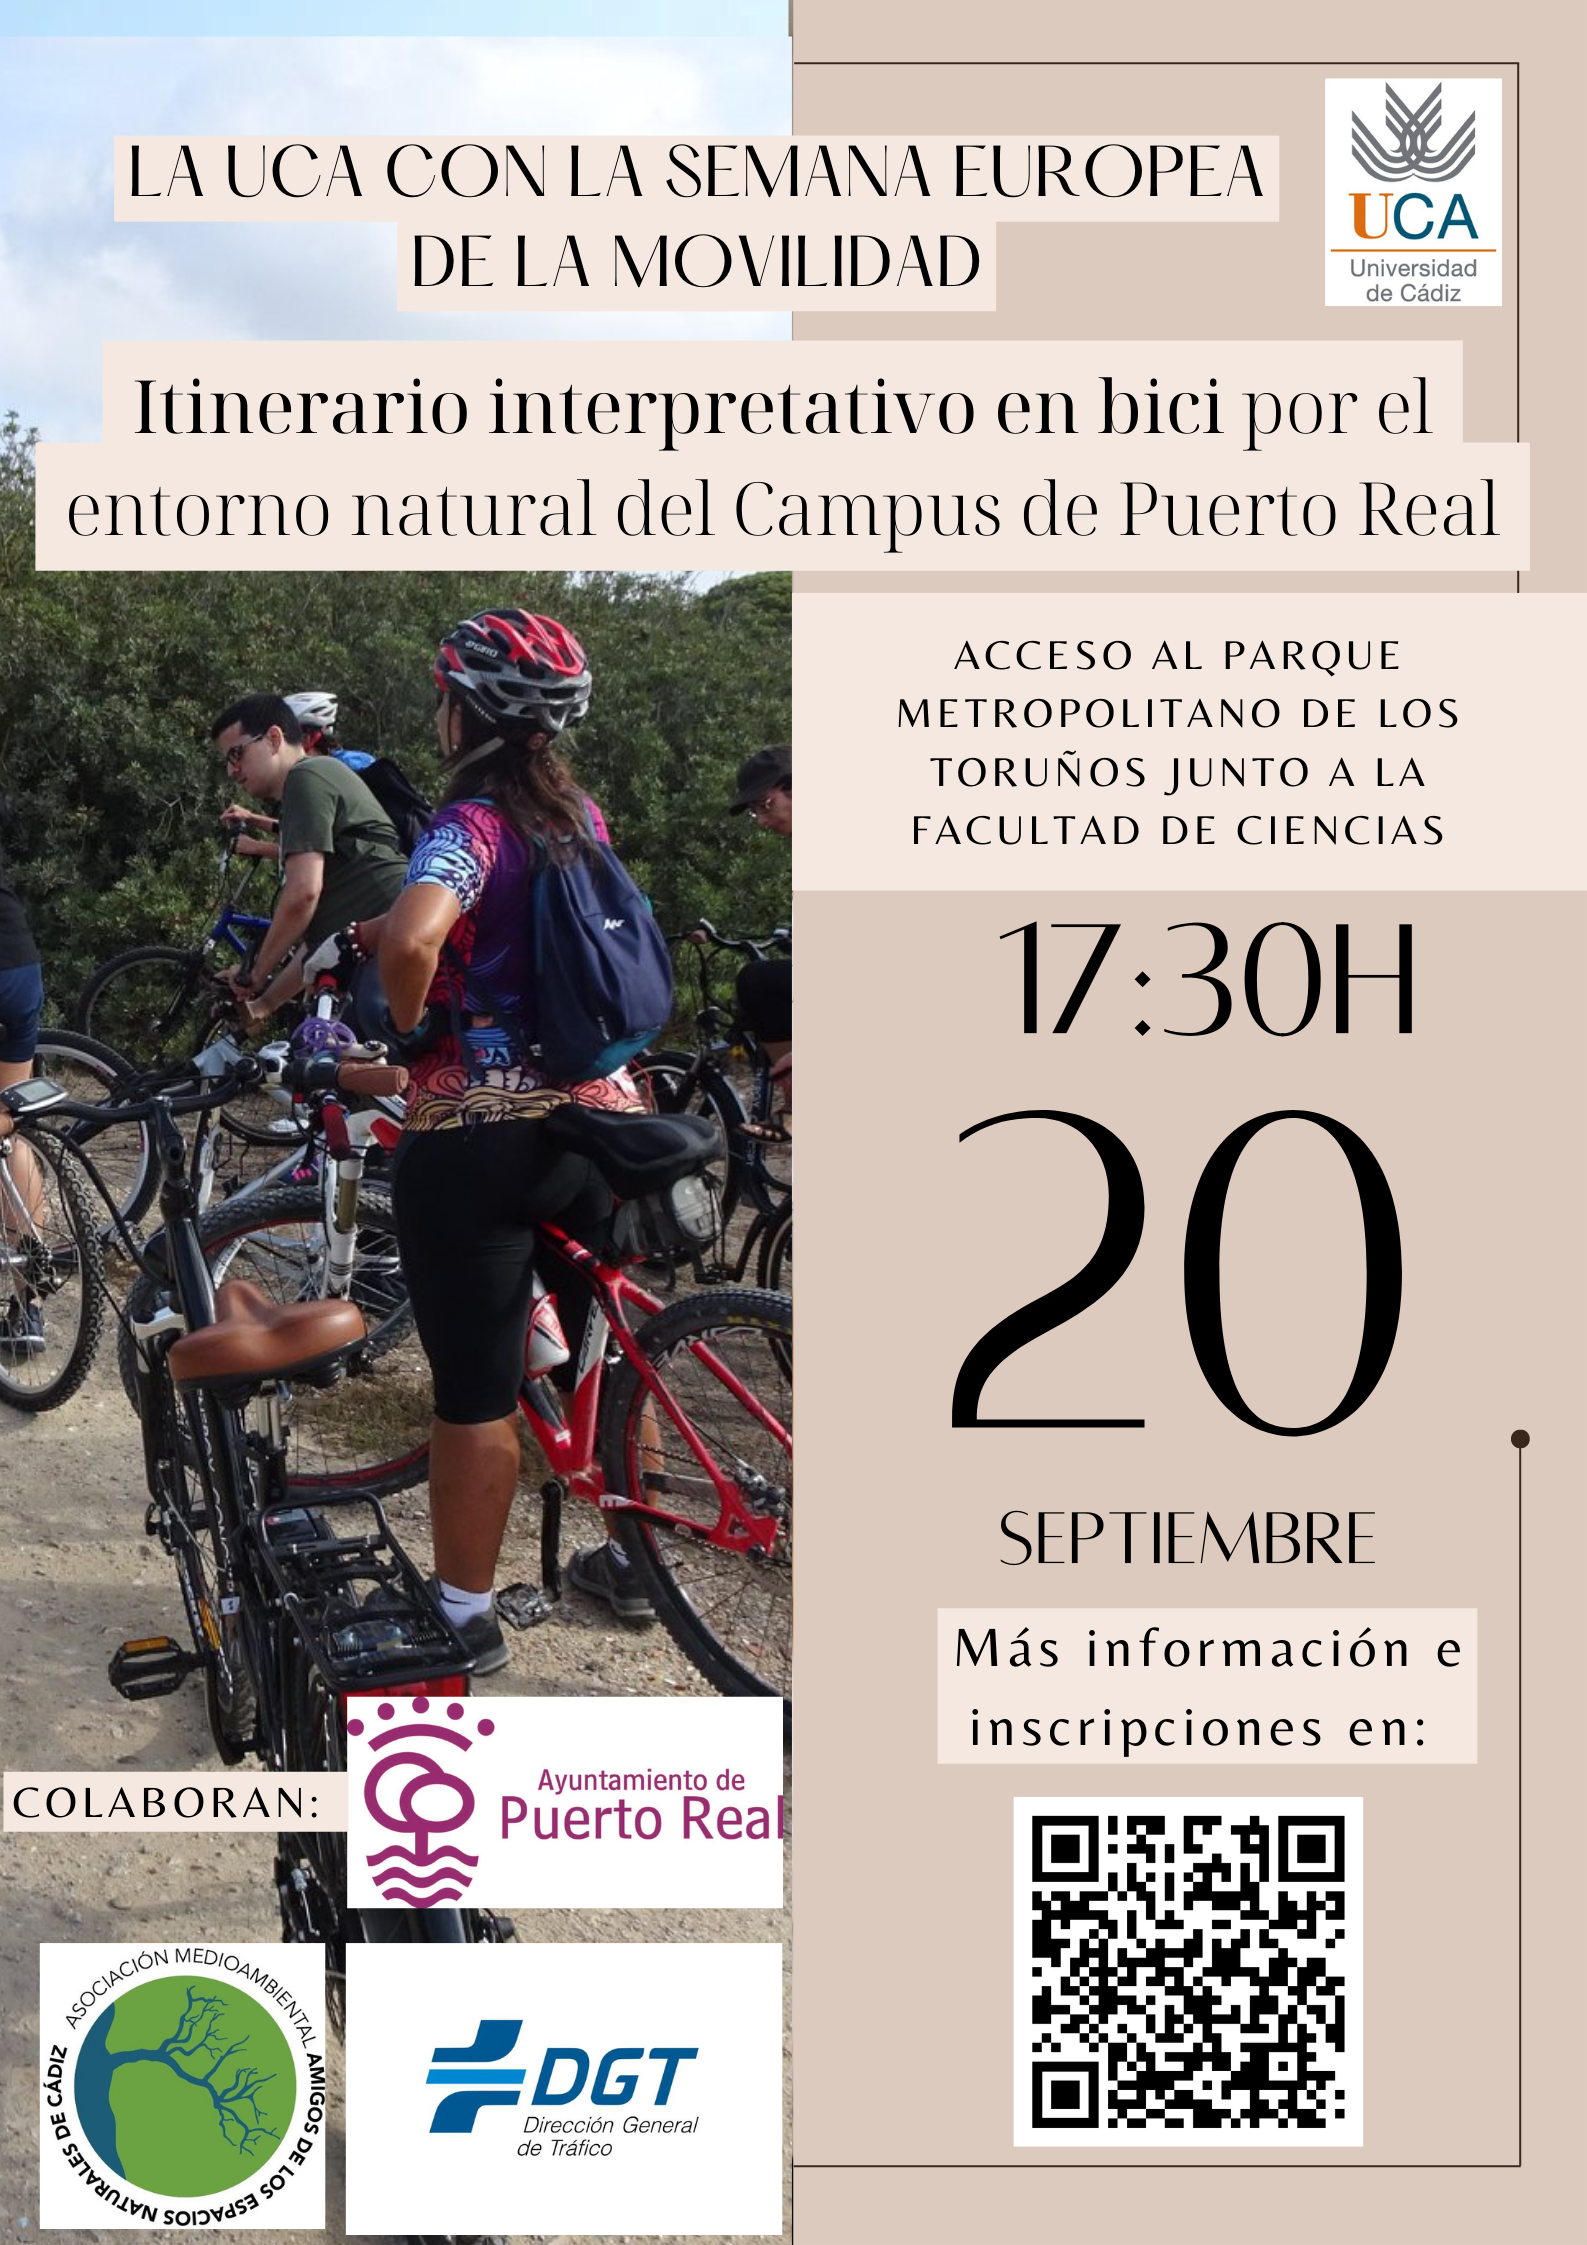 Participa en los “Itinerario interpretativo a pie y/o en bici, sostenible, saludable y seguro por el entorno ambiental del Campus de Puerto Real” enmarcados en la Semana Europea de la Movilidad